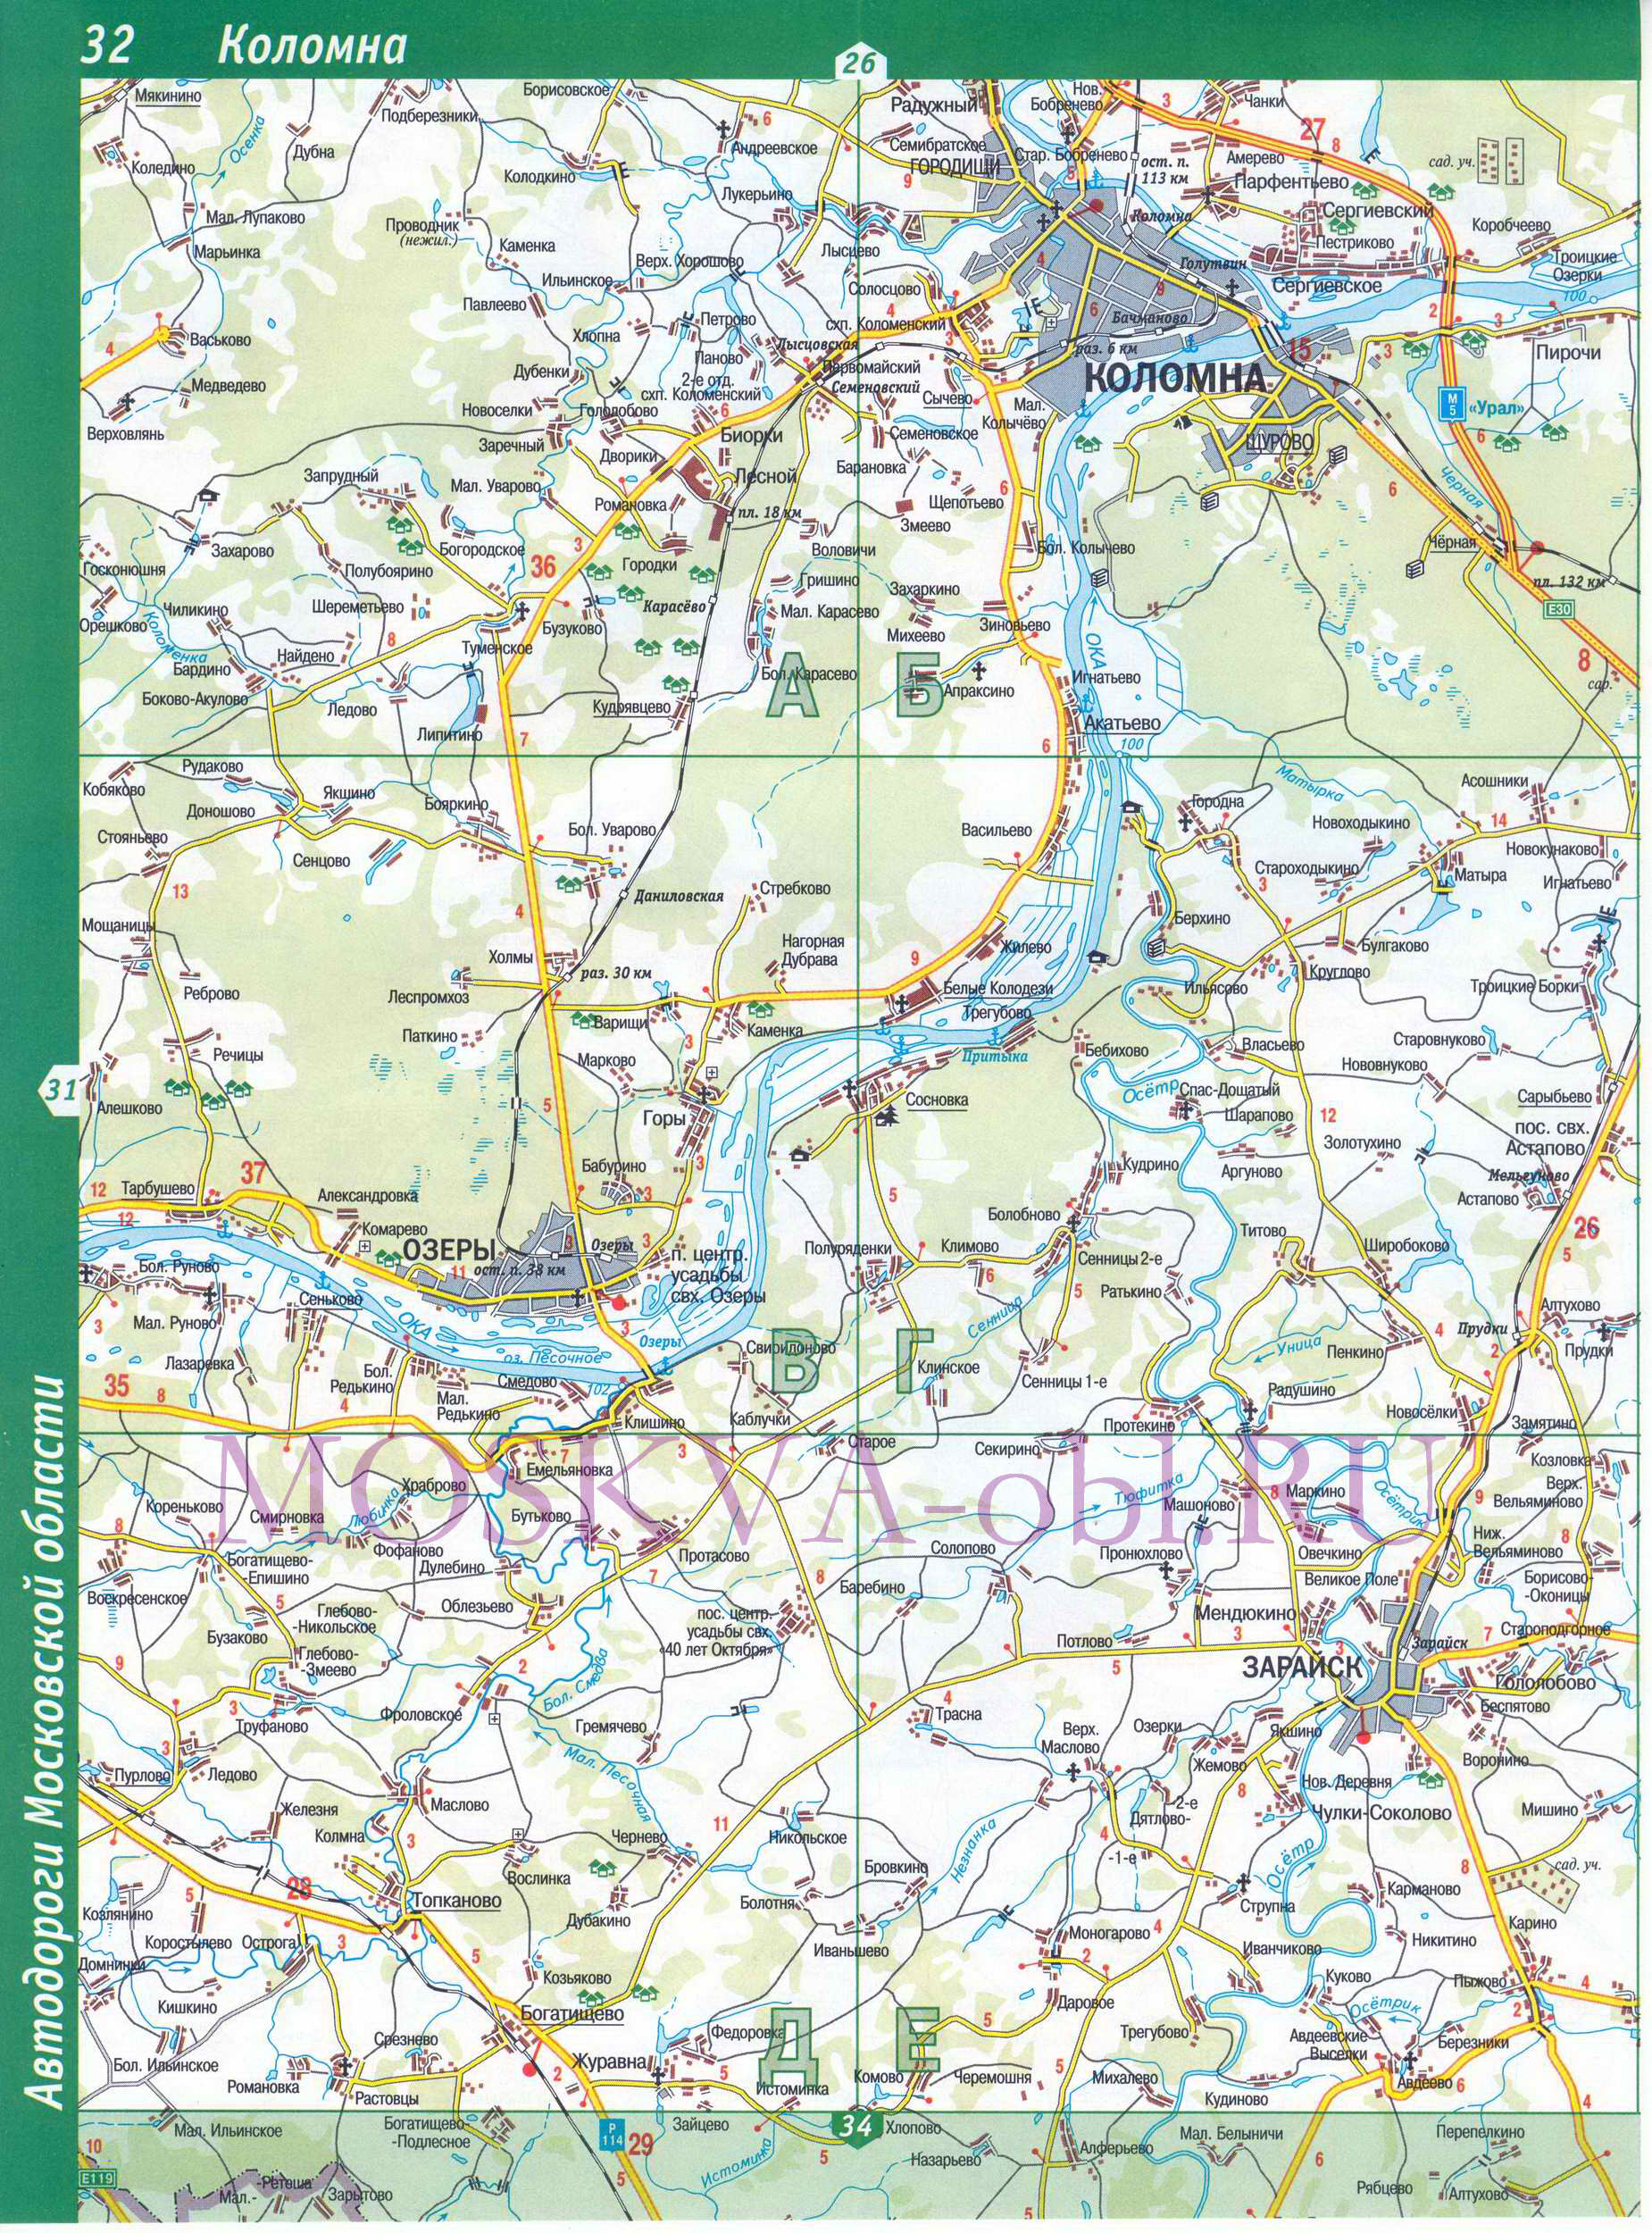 Карта Коломенского района. Карта Московской области - Коломенский район, A1 - 